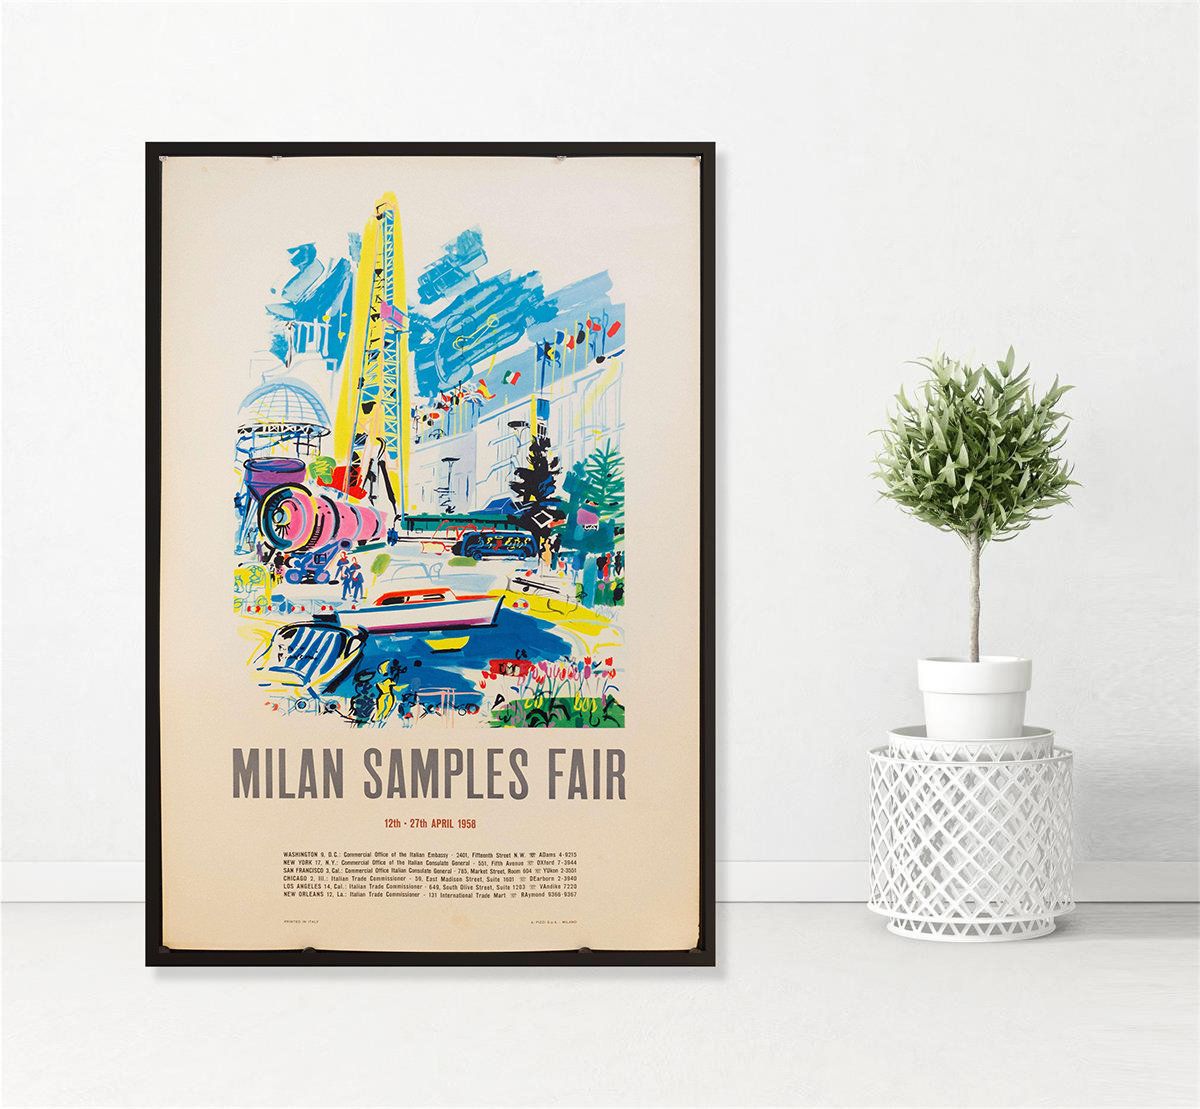 milan travel poster